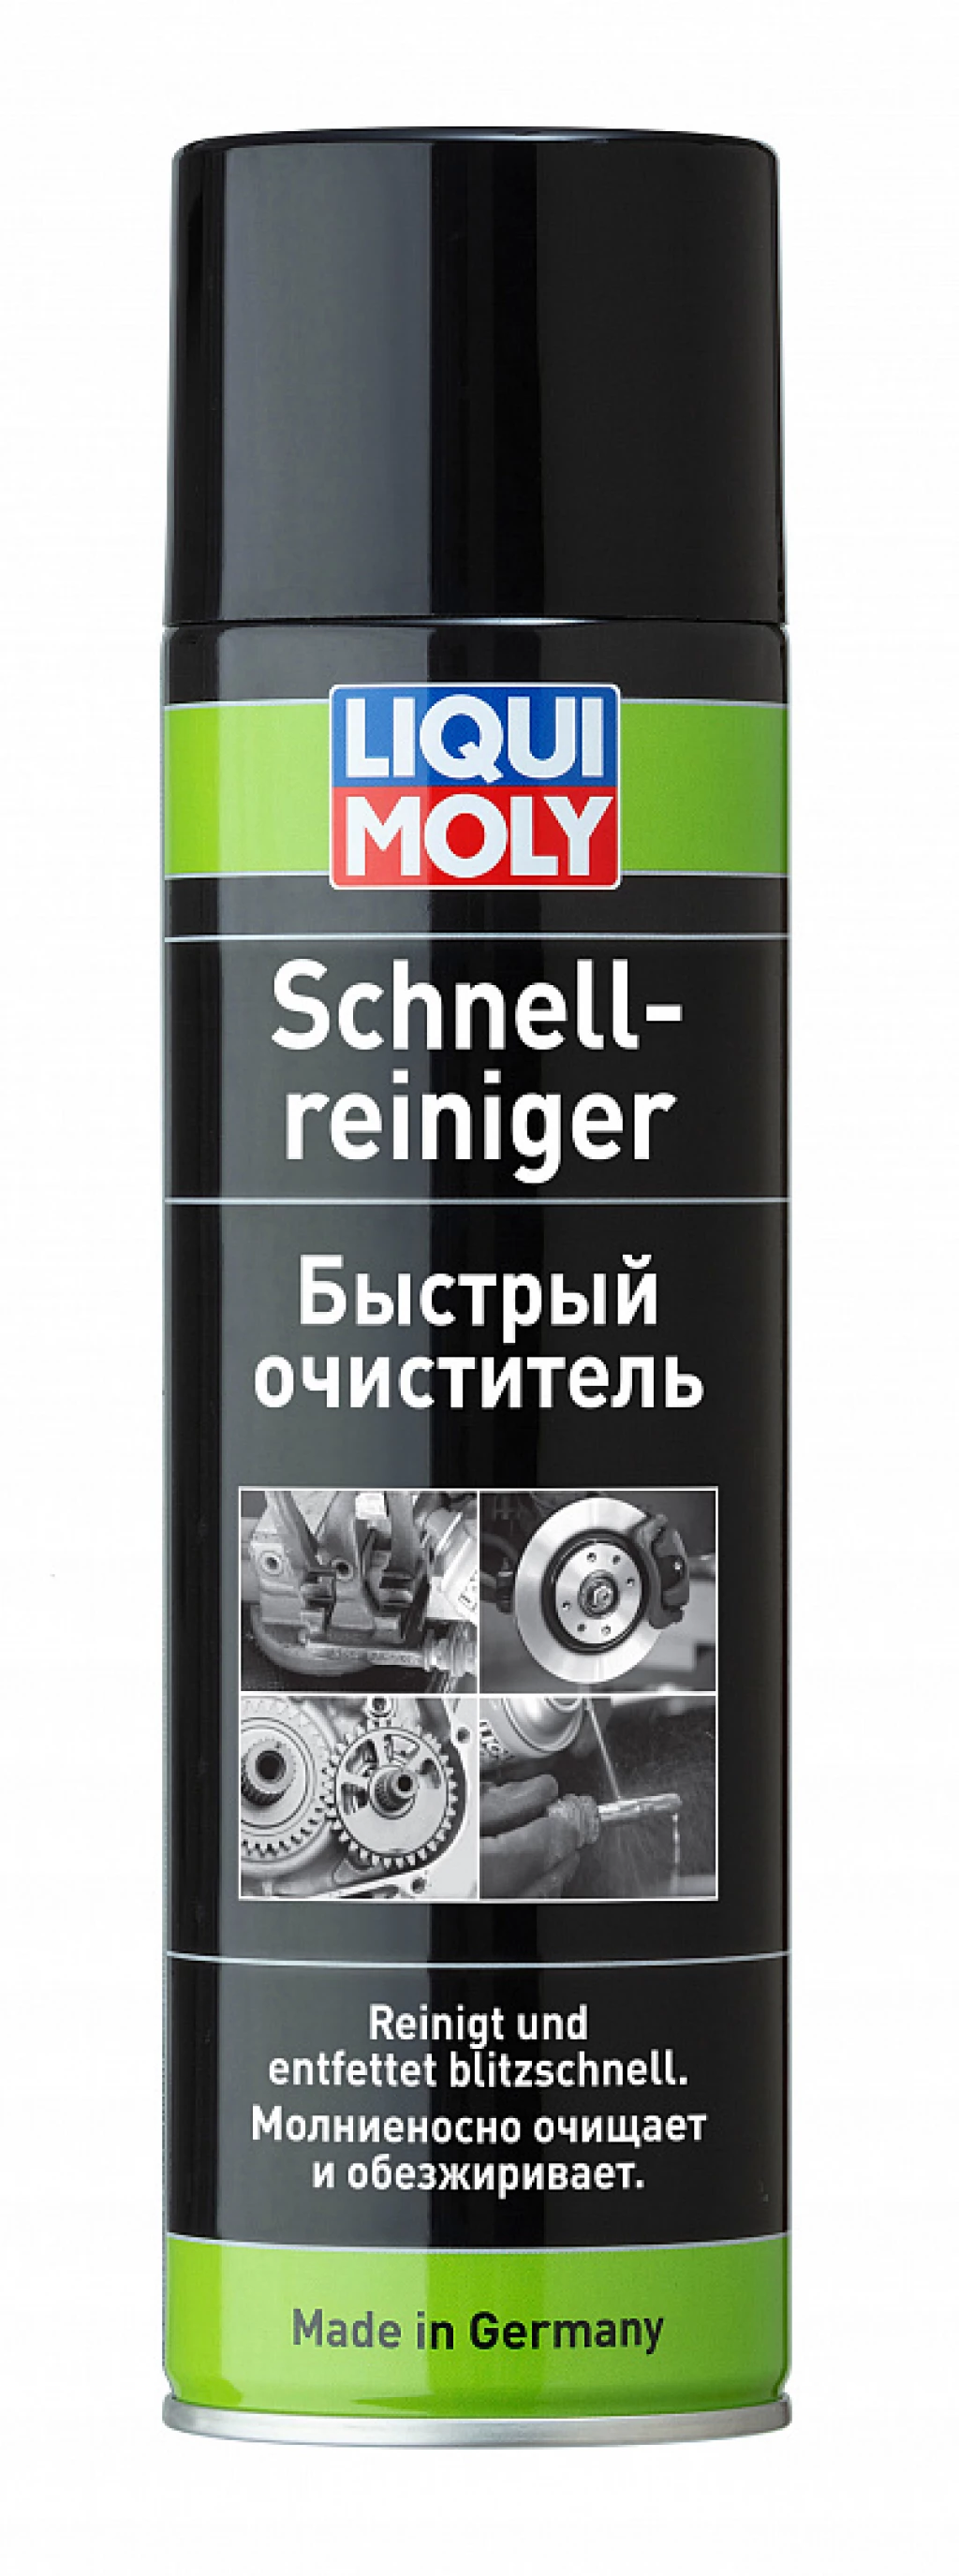 Очиститель универсальный Liqui Moly Schnell-Reiniger аэрозоль 500 мл